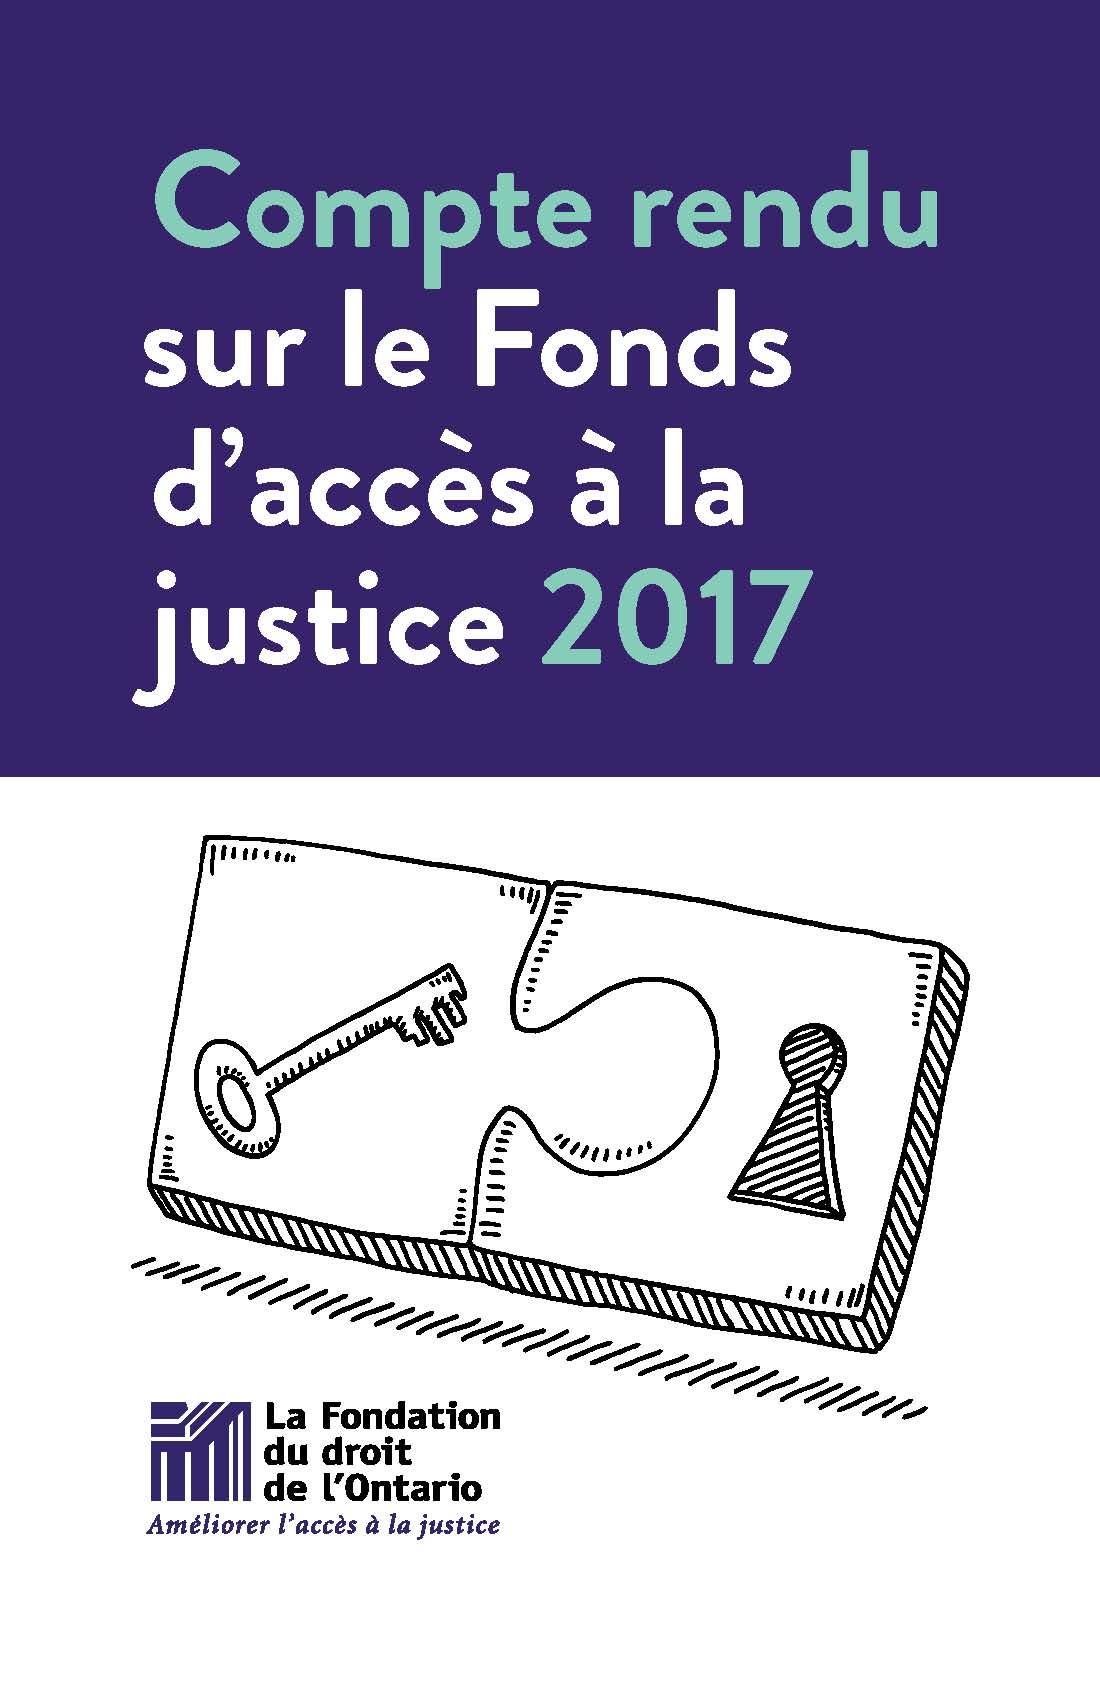 Compte rendu de la Fondation du droit de l’Ontario sur le Fonds d’accès à la justice 2017